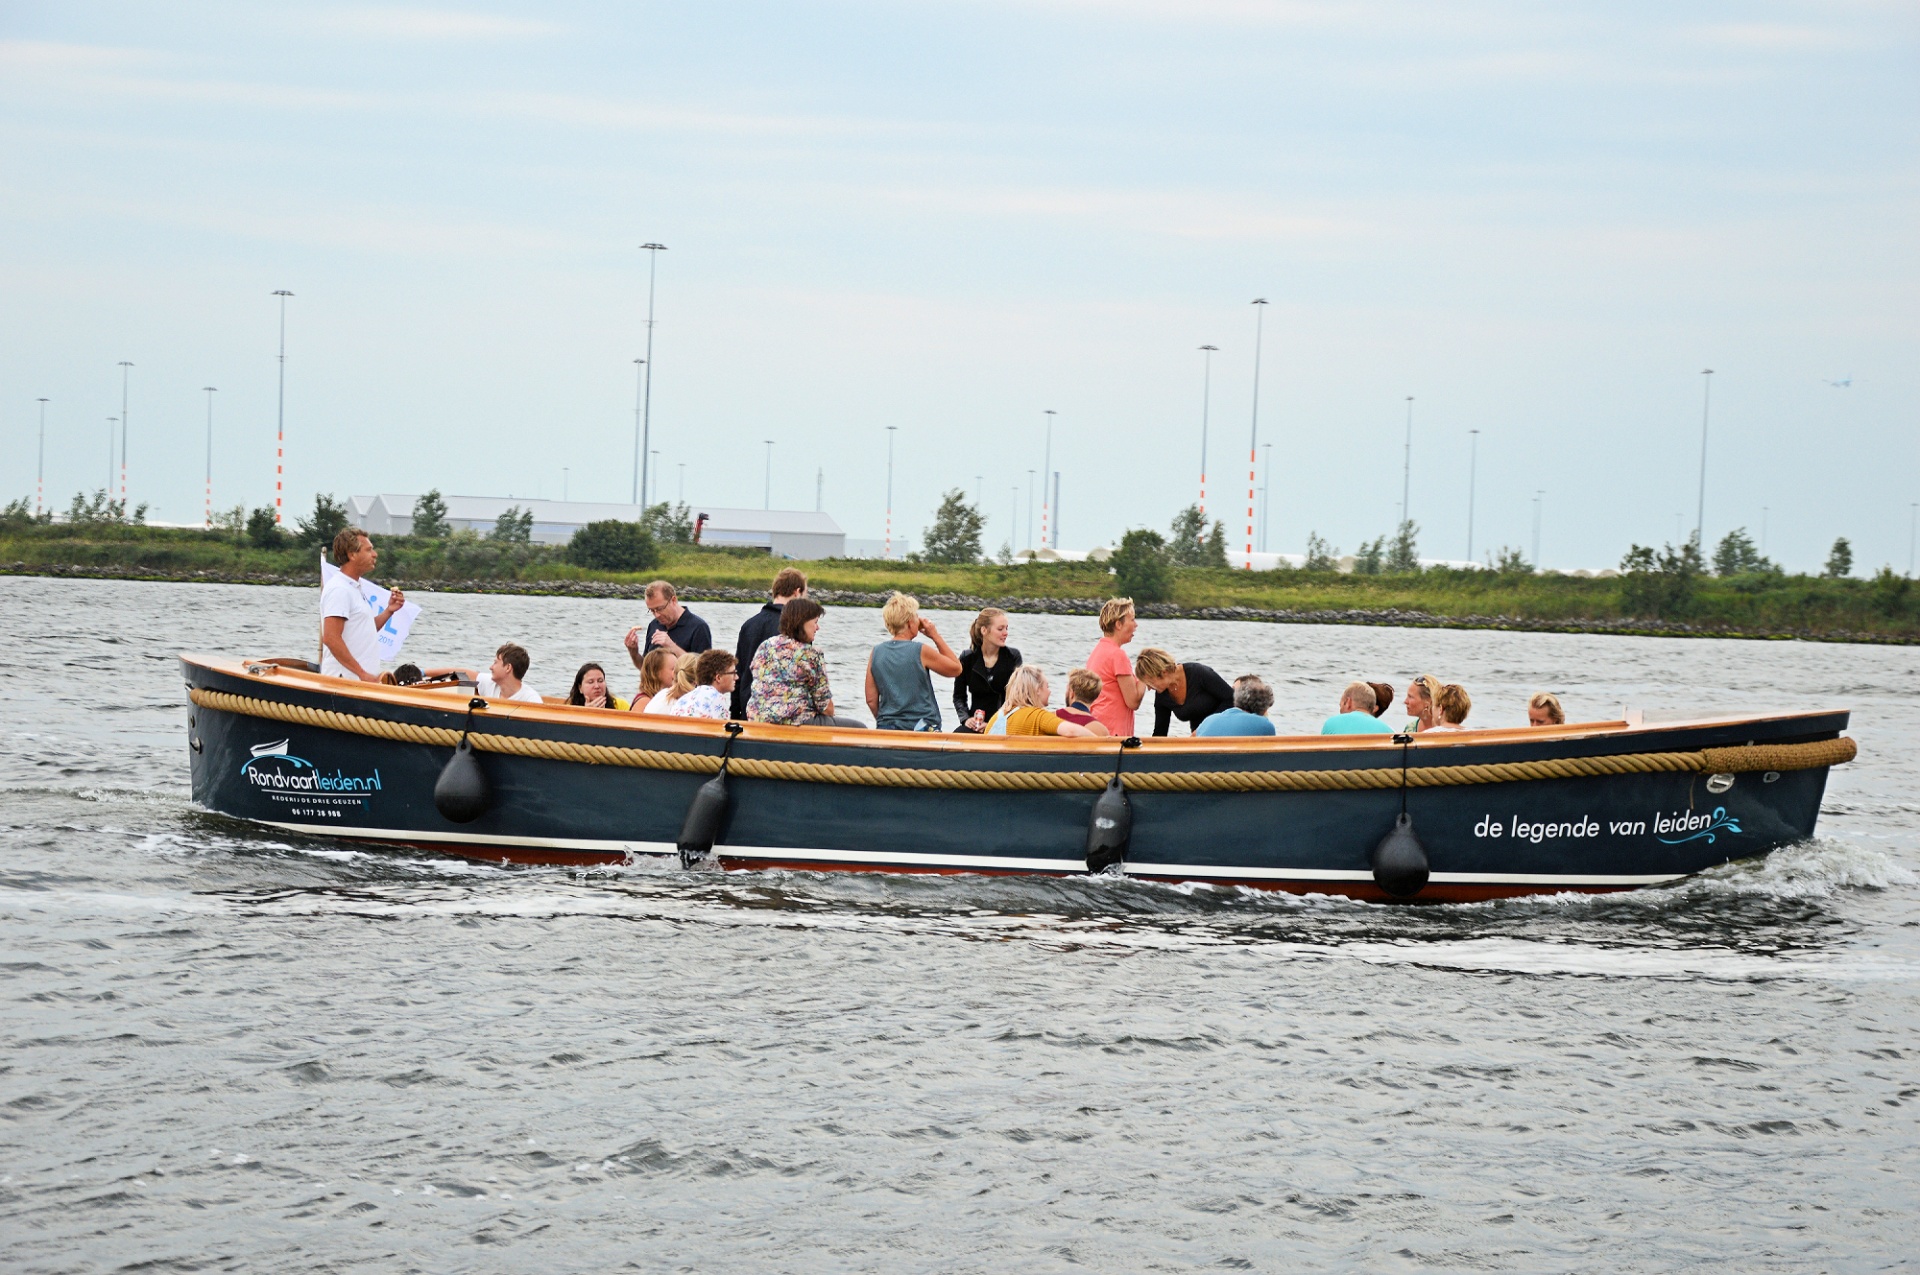 sloop boat speedboat free photo